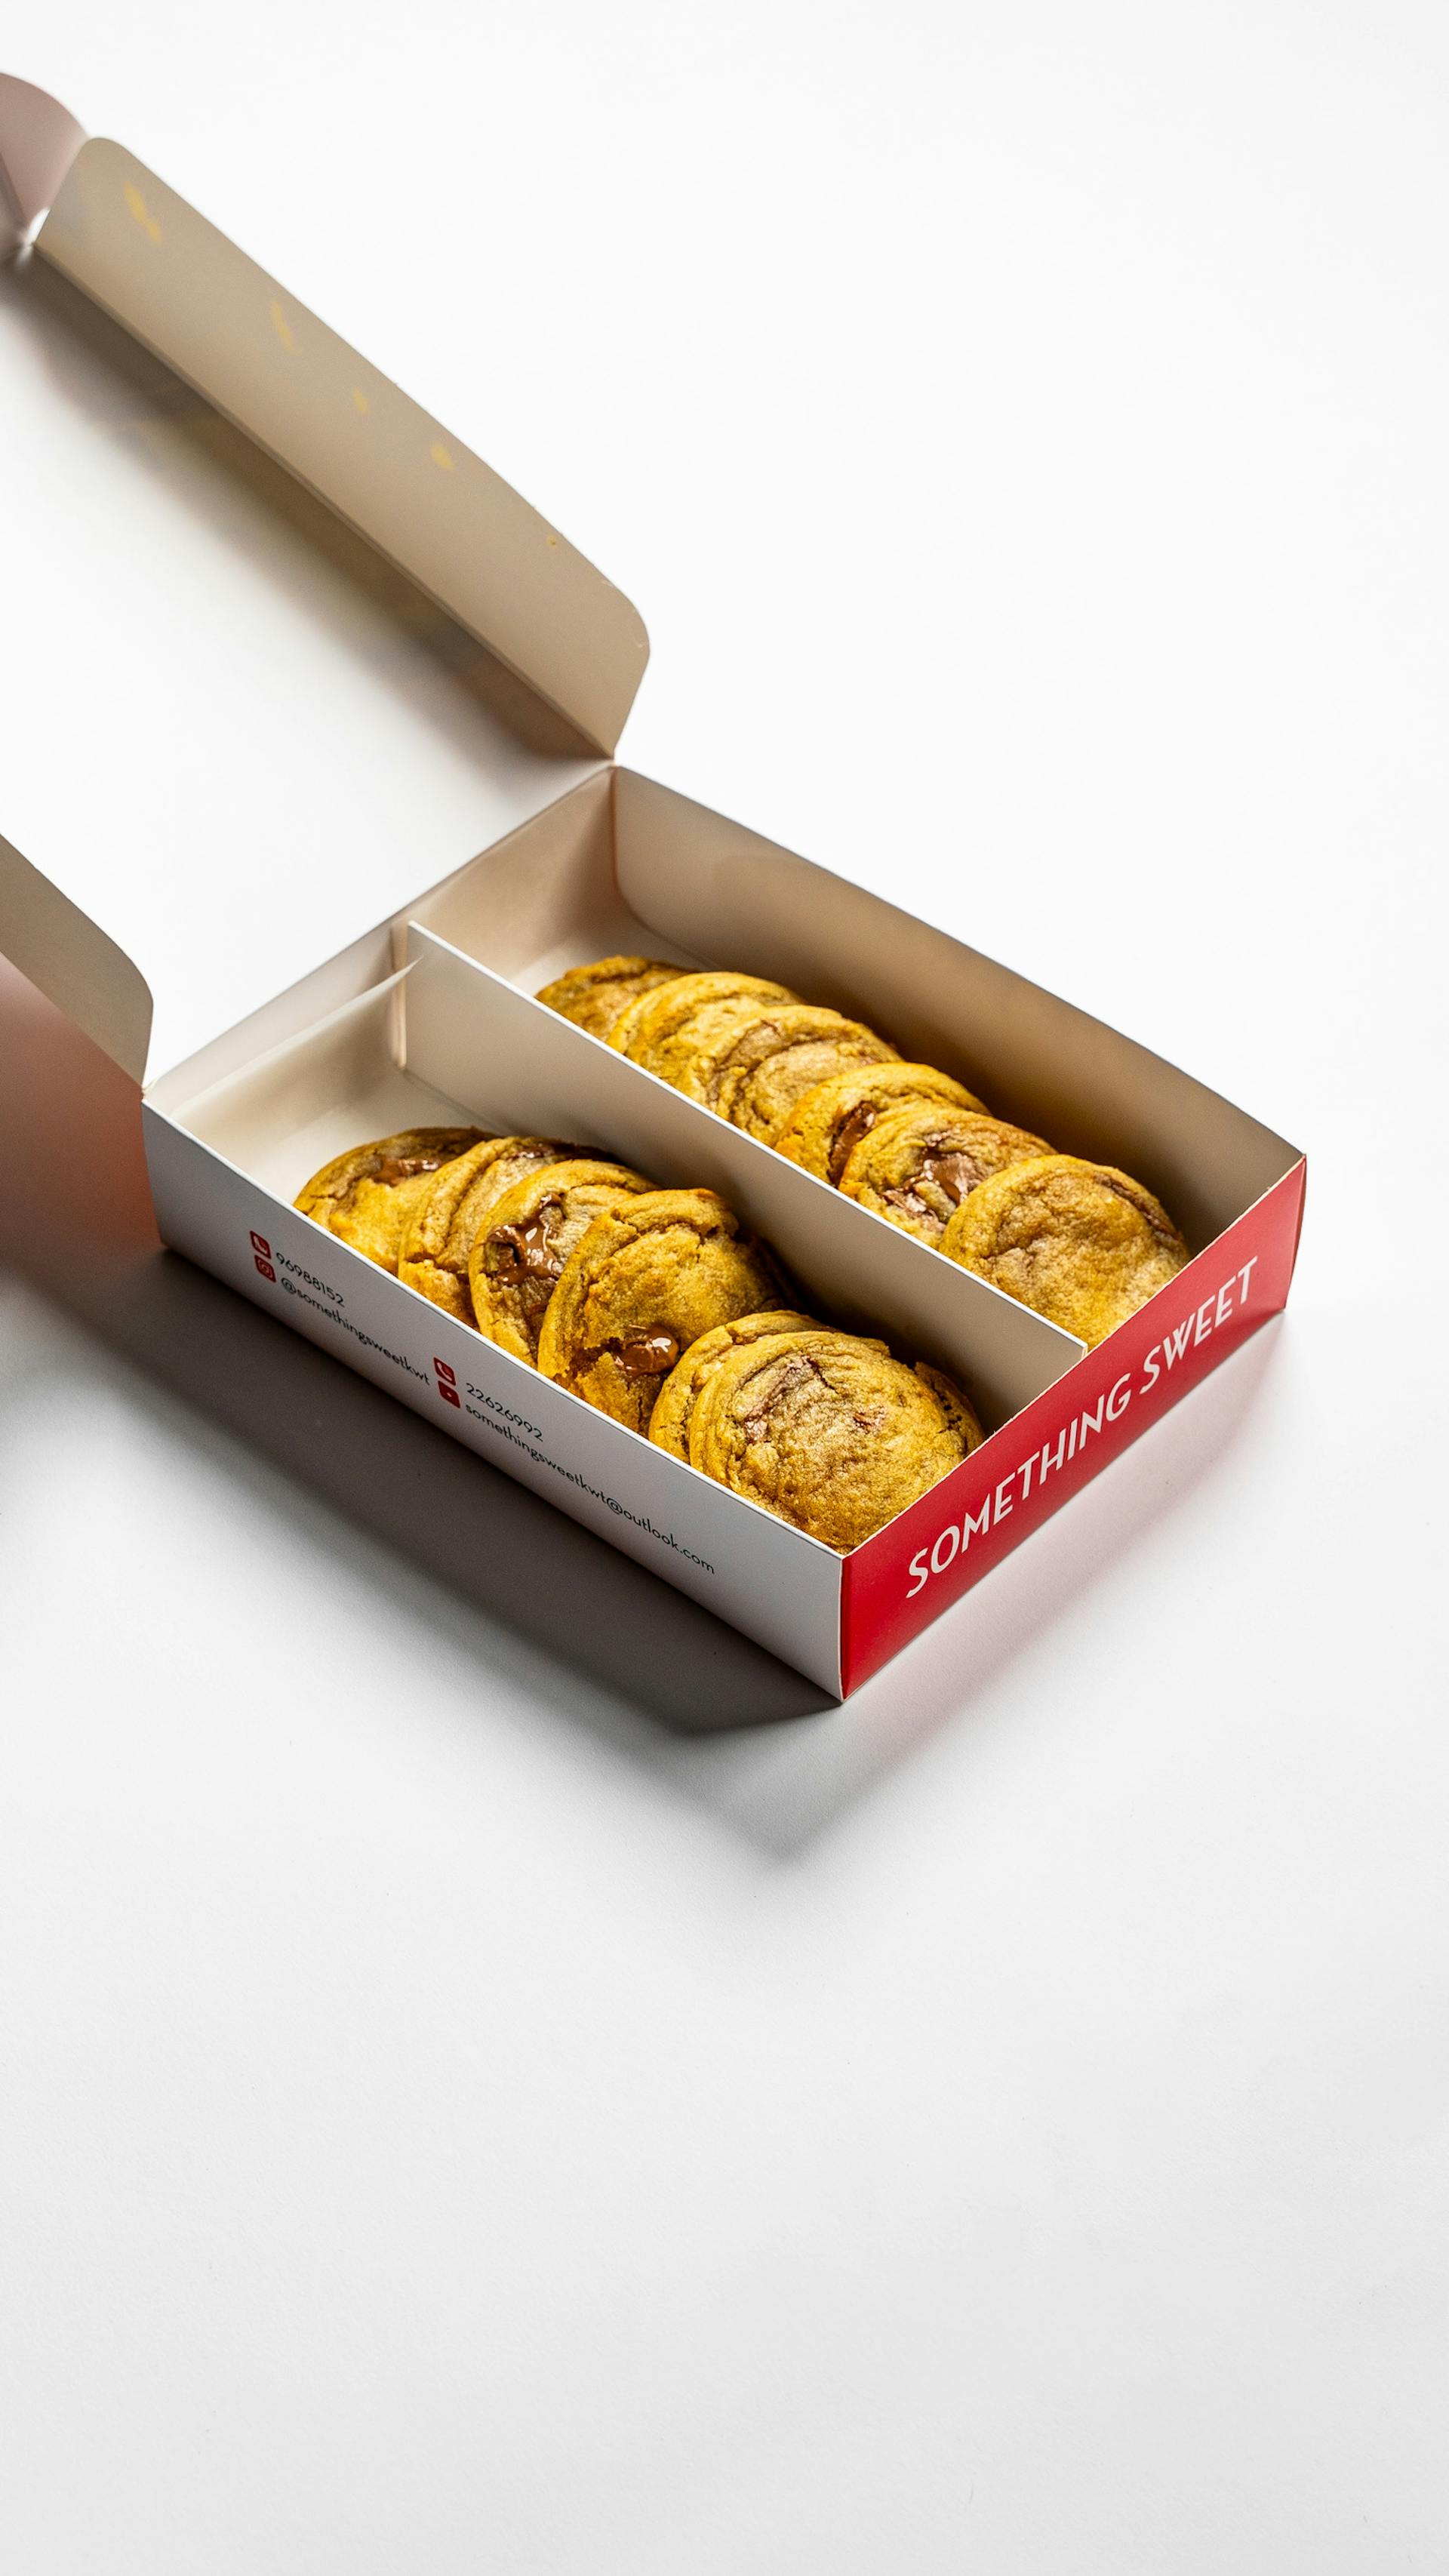 Caja de galletas | Fuente: Pexels